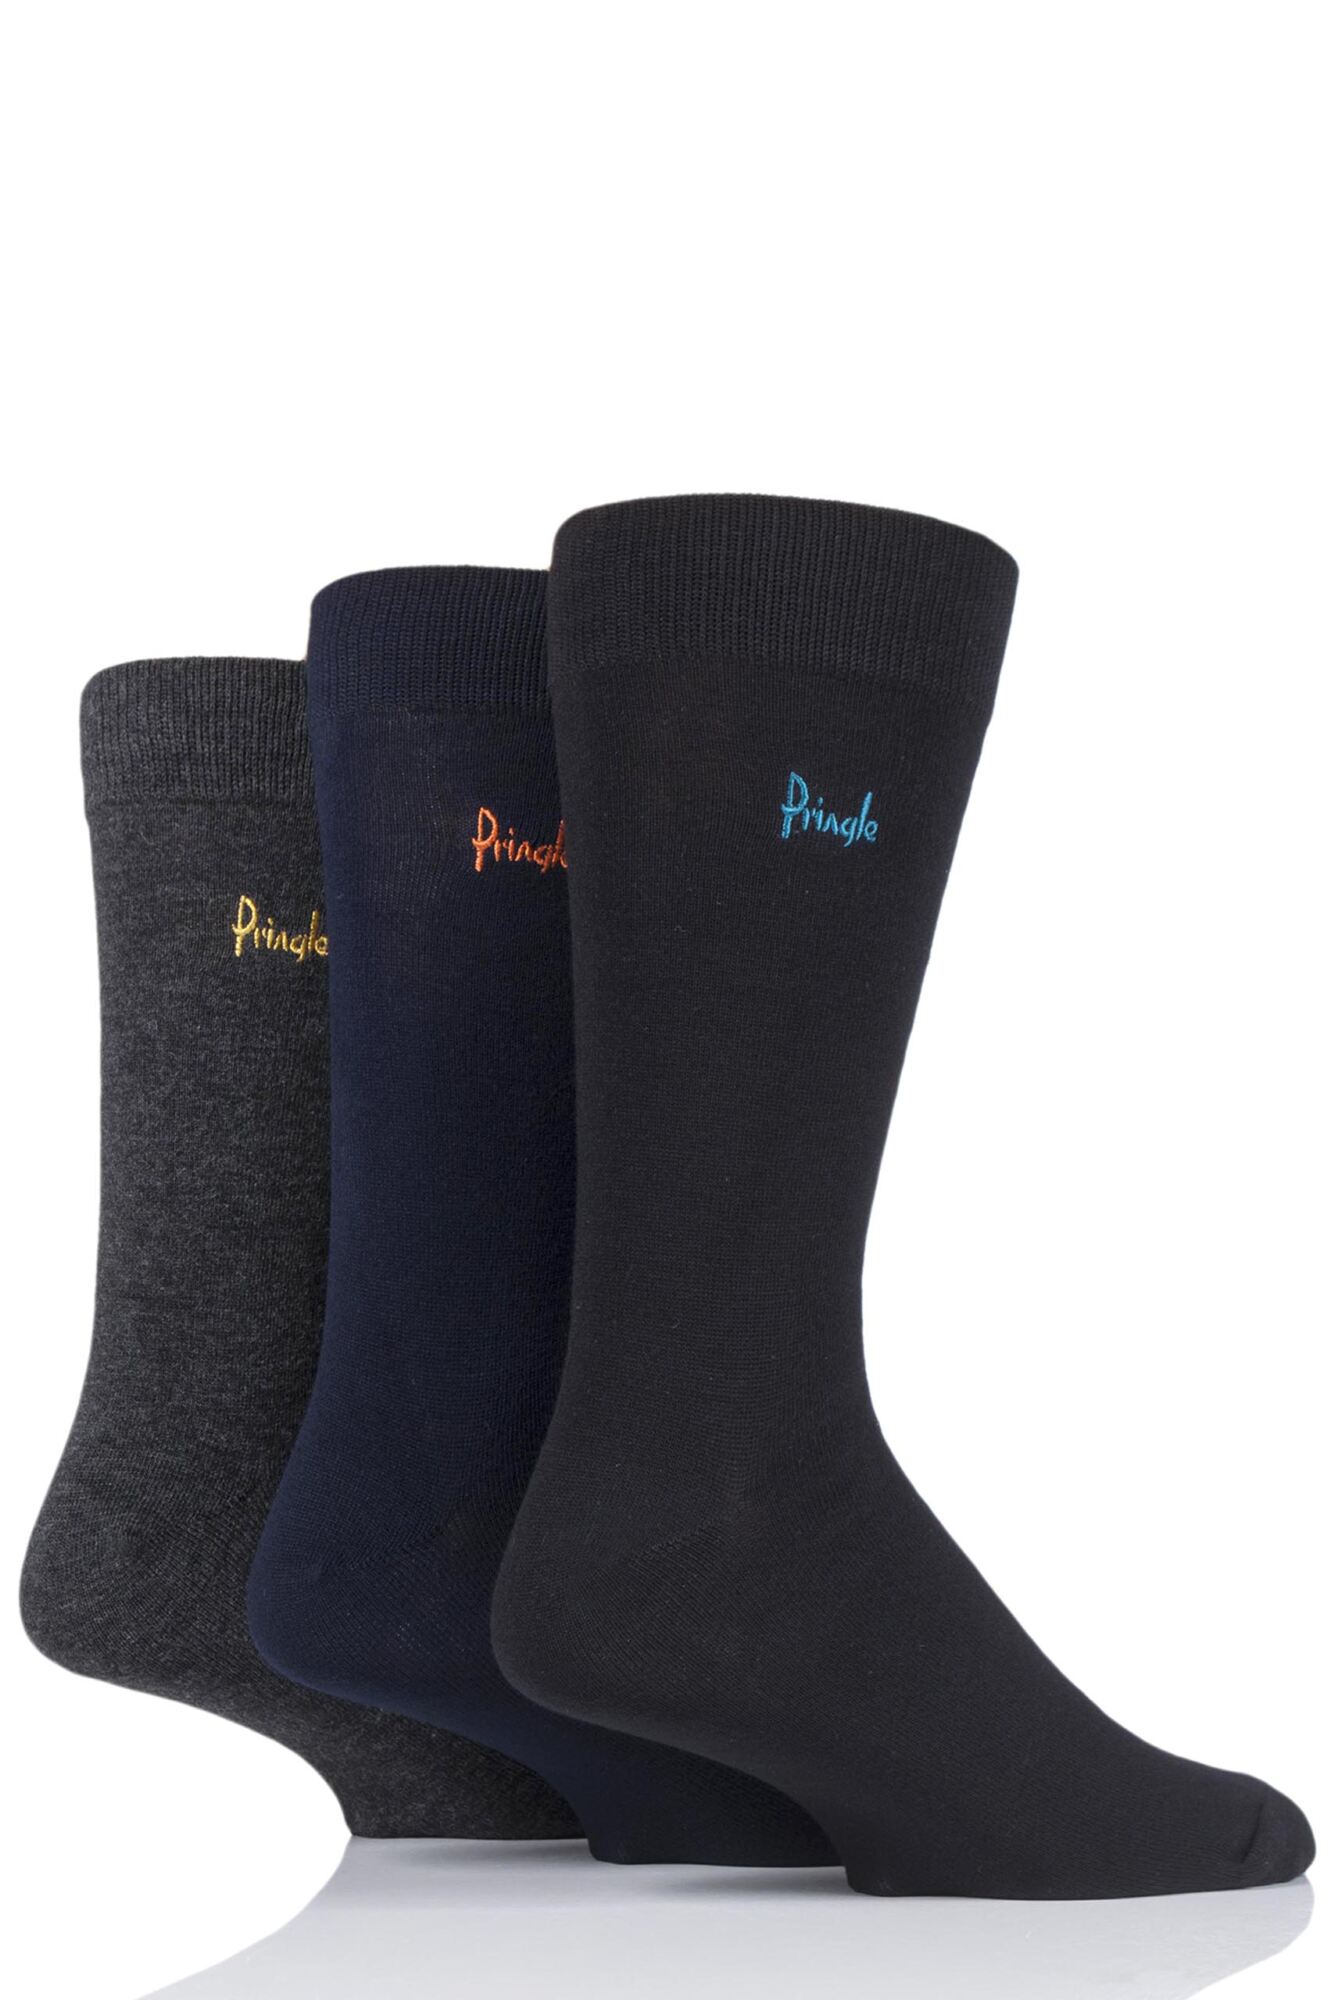 Mens 3 Pair Pringle Plain Rupert Bamboo Socks from SockShop